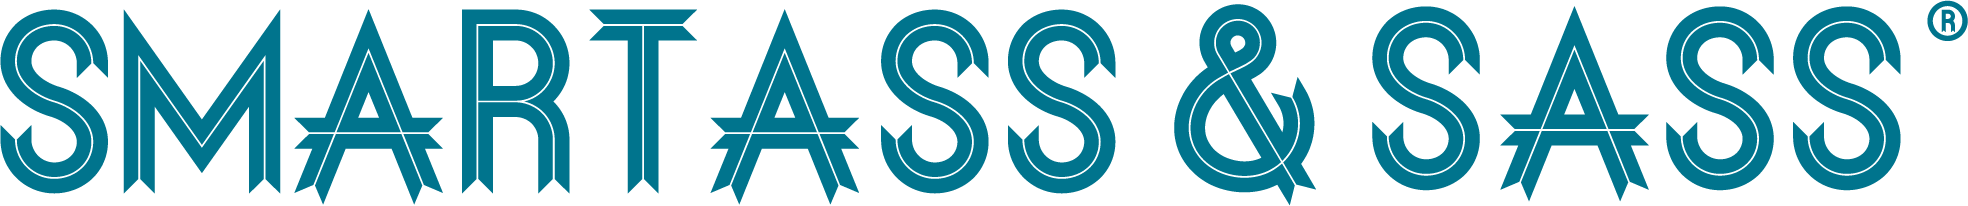 Smartass & Sass FAQ logo